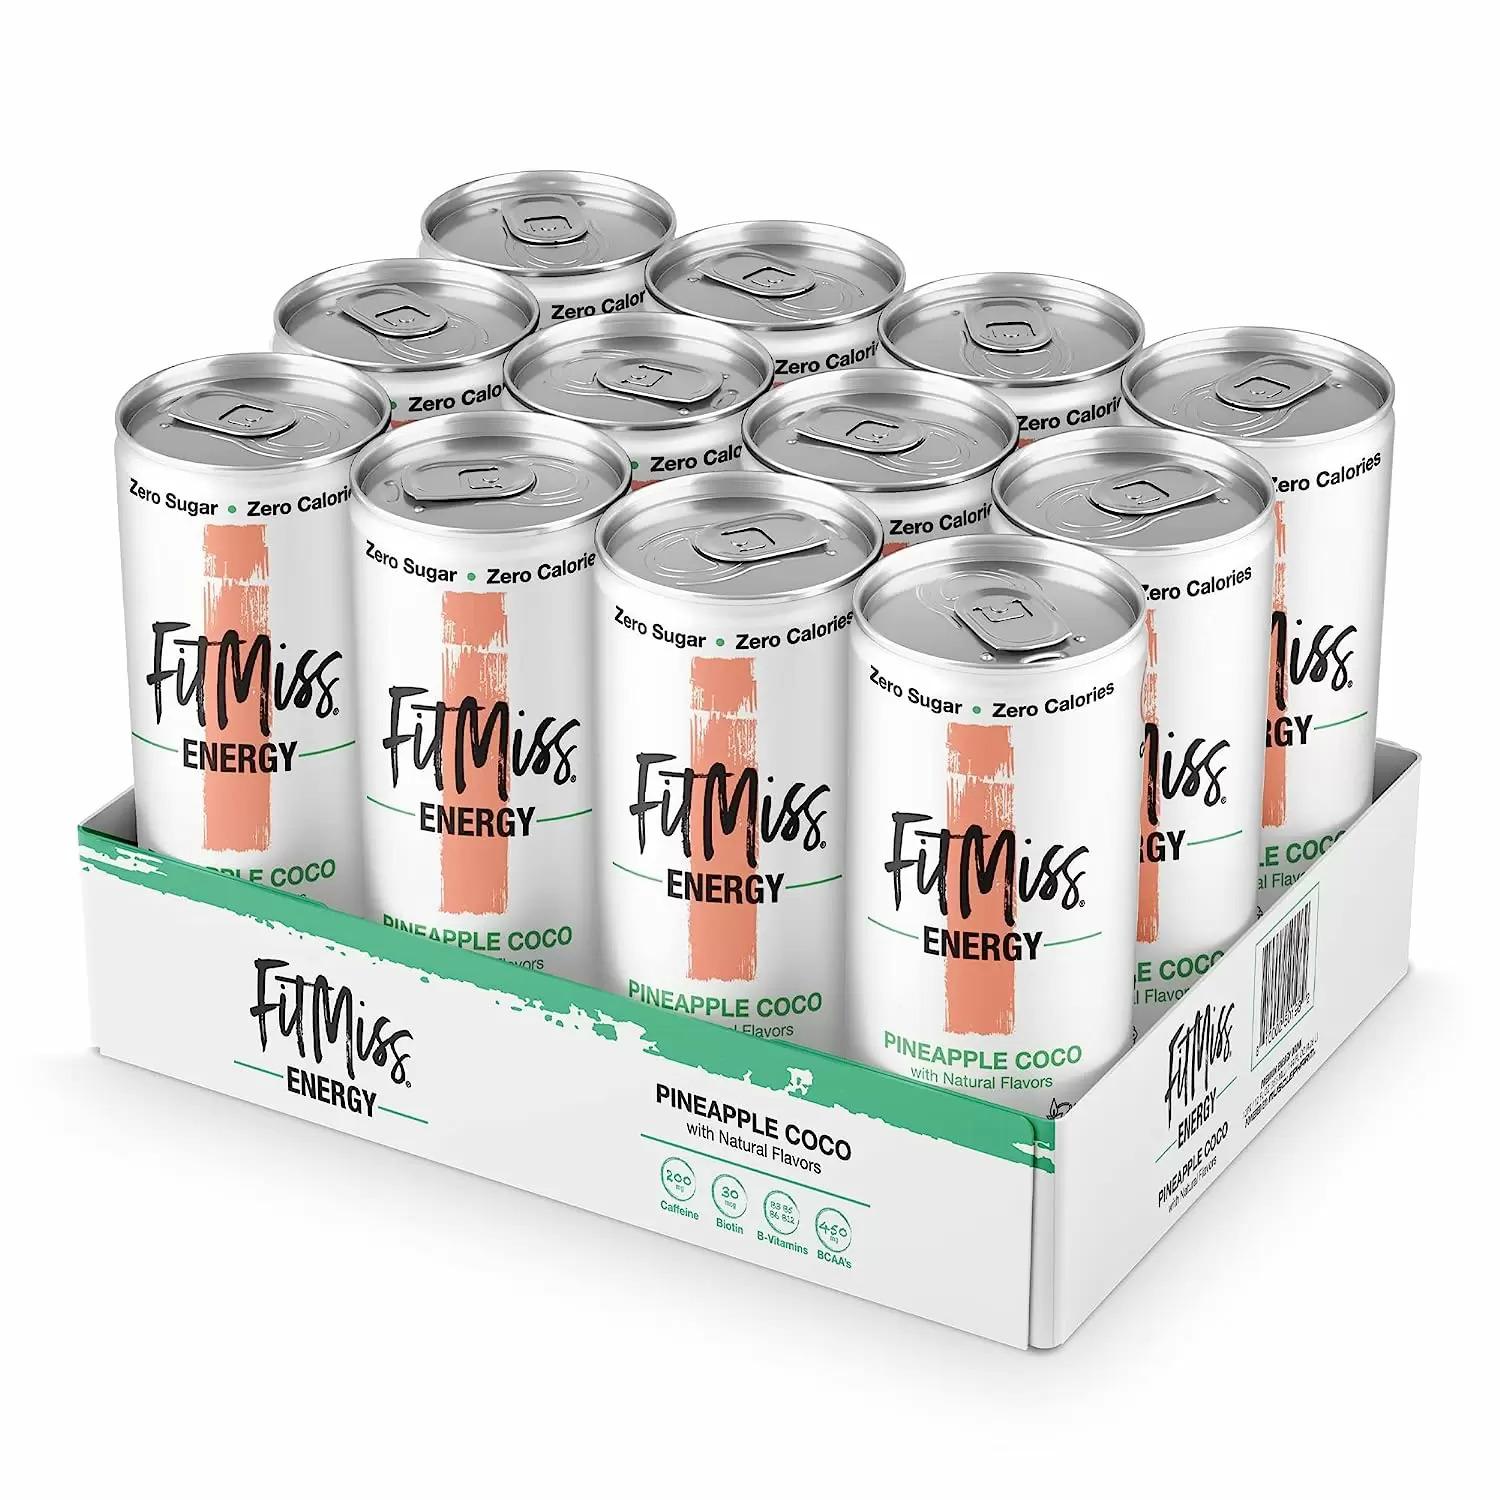 MusclePharm FitMiss Energy Drinks 12 Pack for $9.50